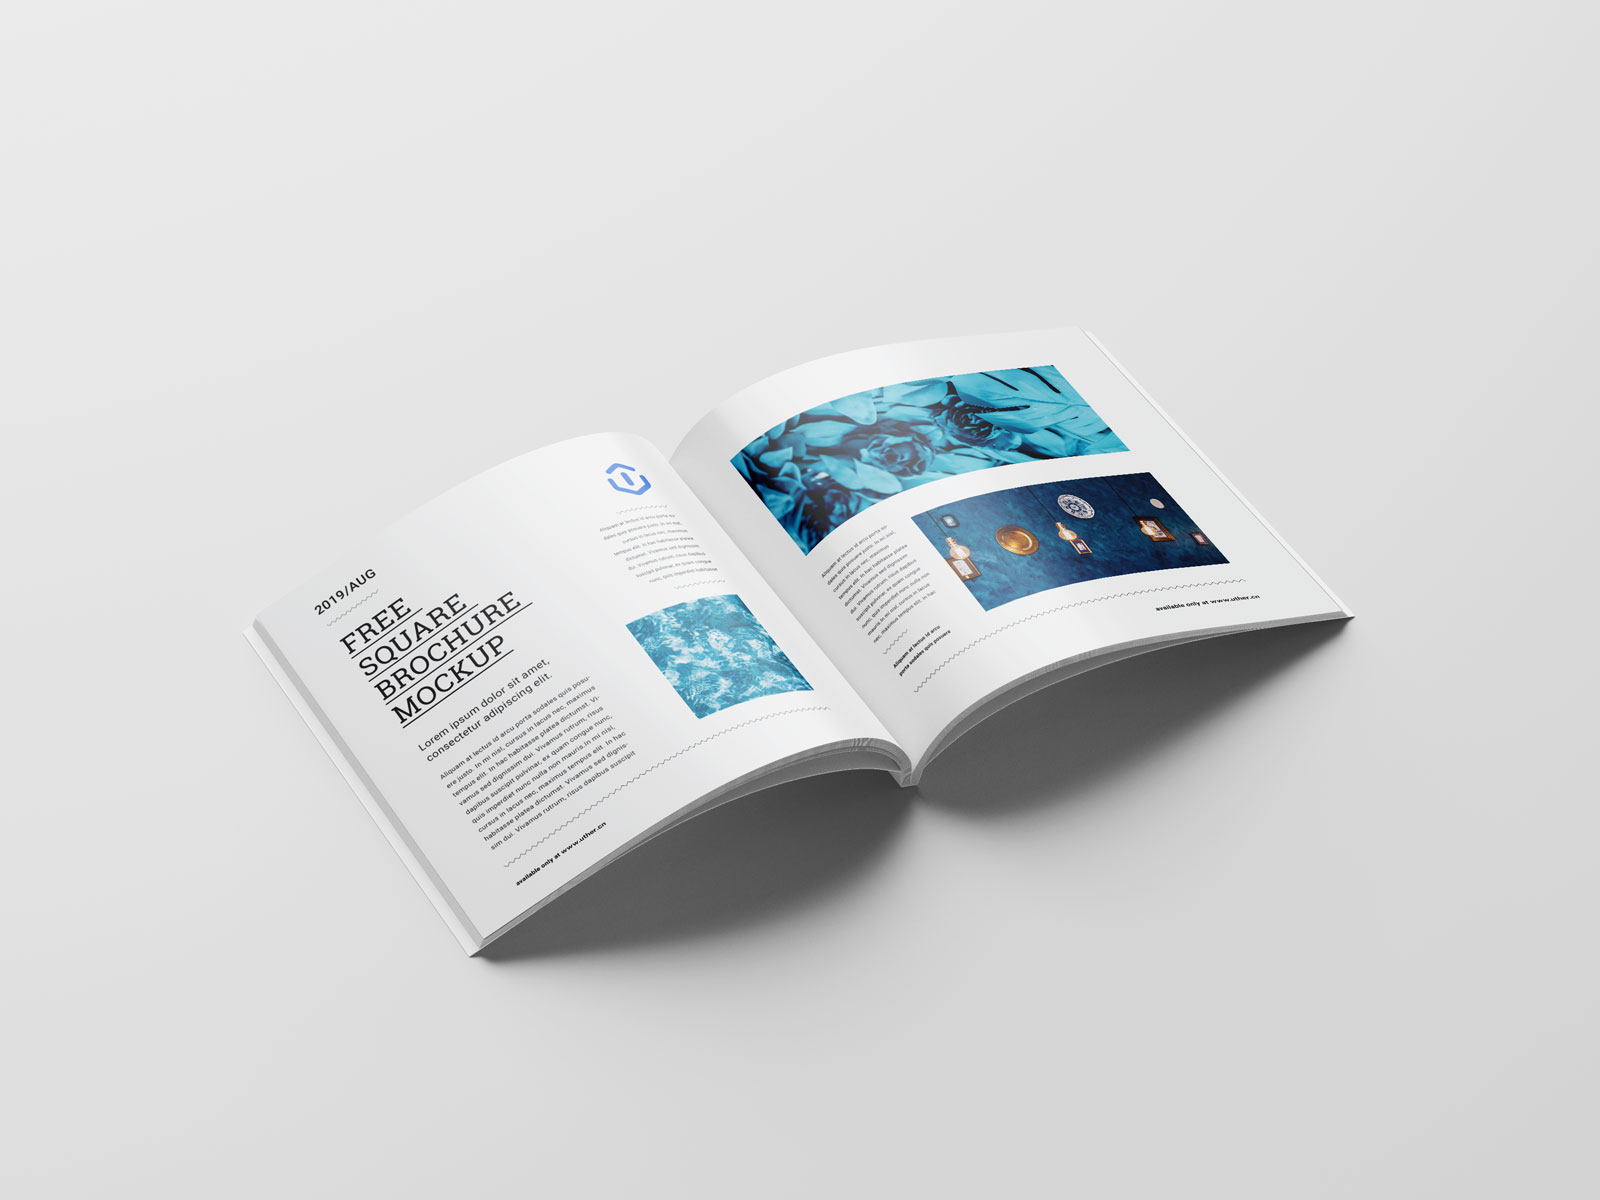 高端正方形胶装宣传册画册手册设计内页展示PSD样机素材brochure mockup